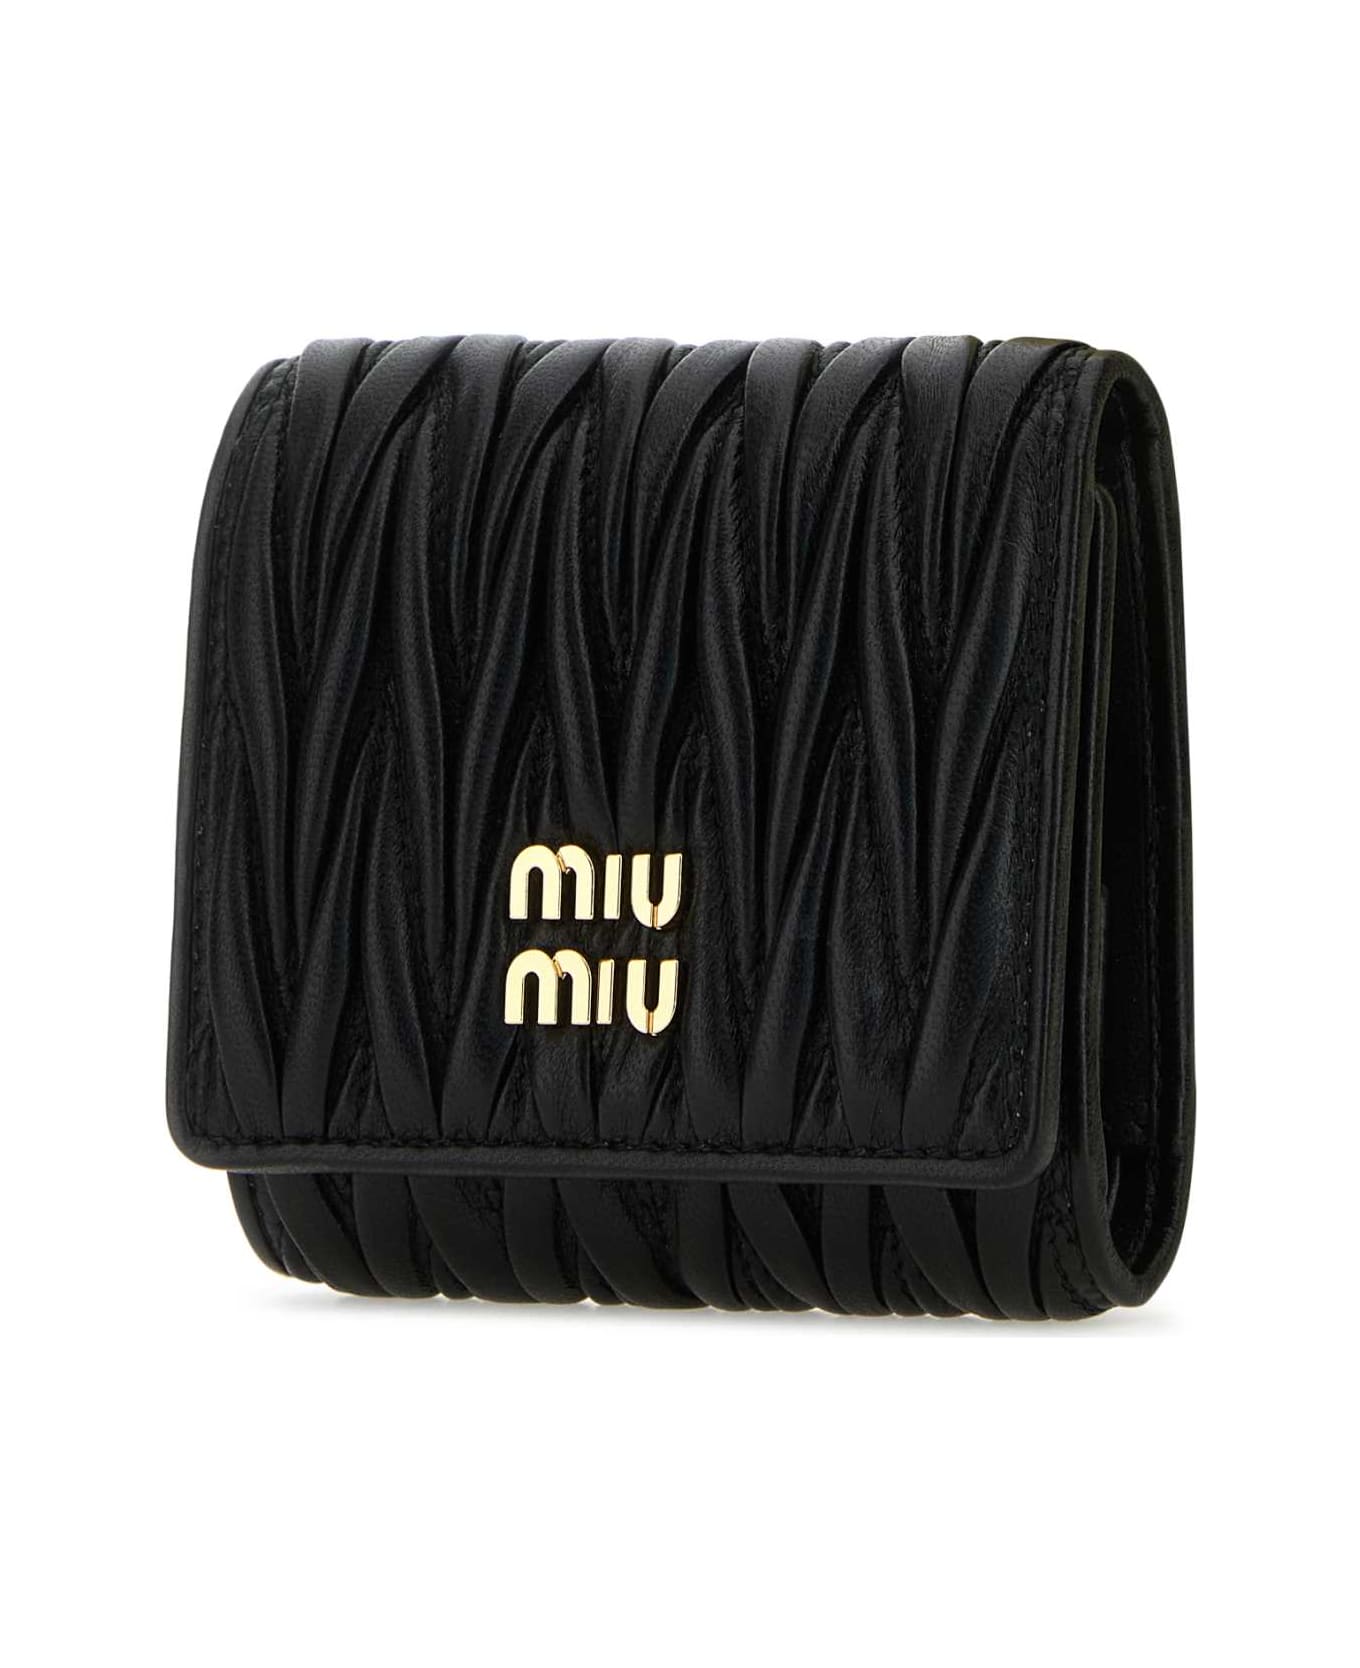 Miu Miu Black Nappa Leather Wallet - NERO 財布